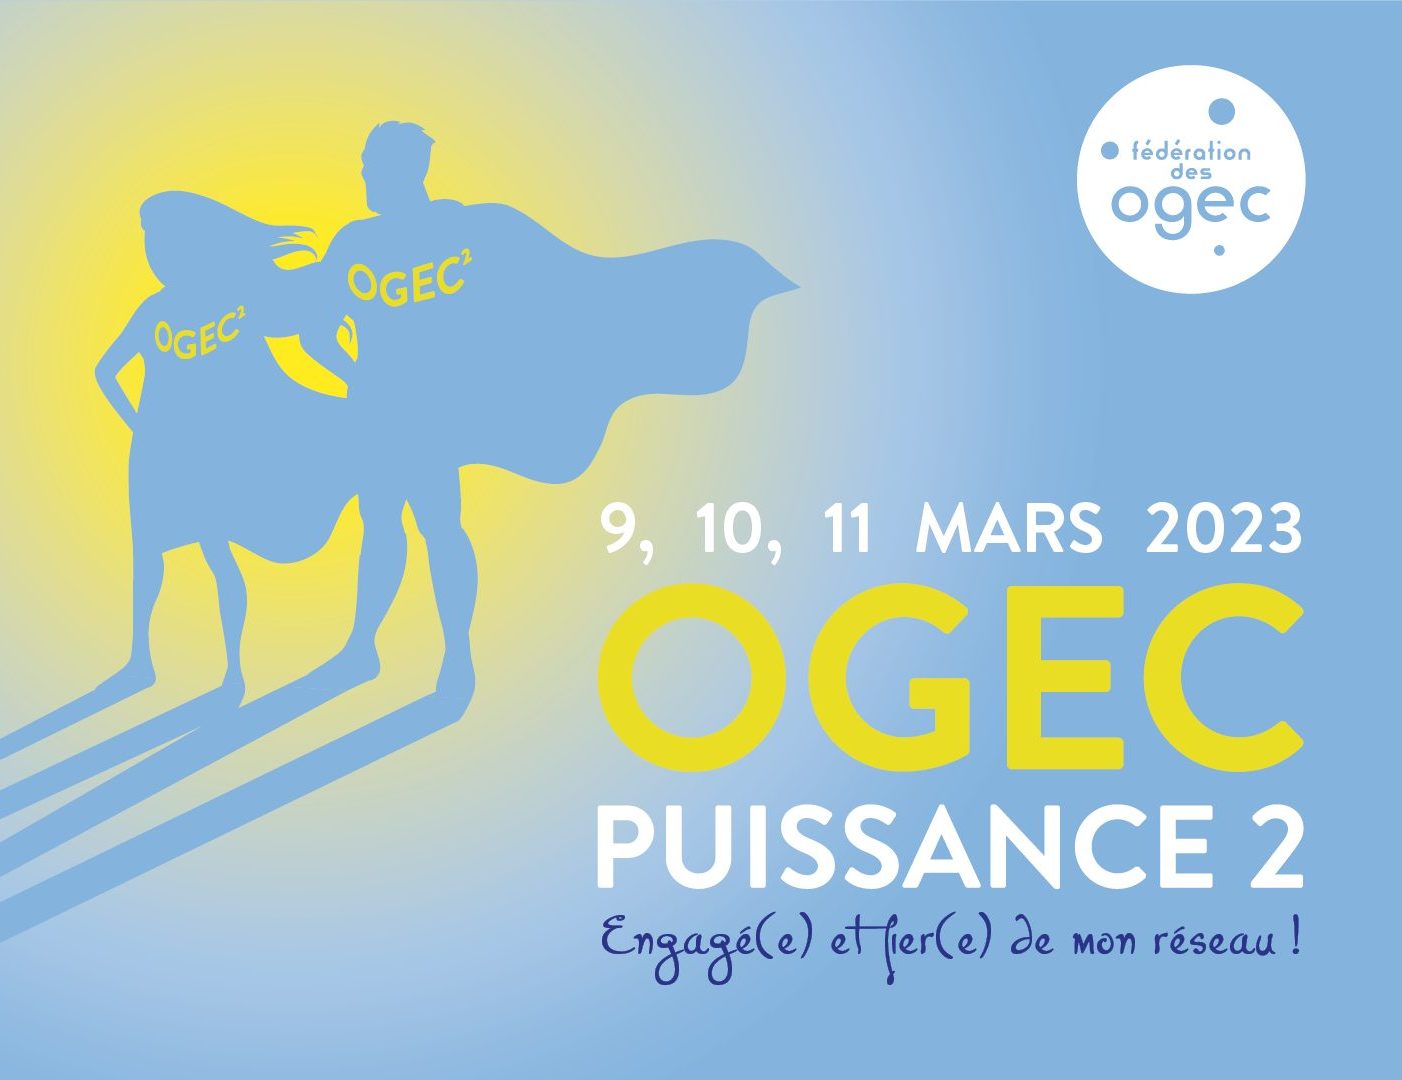 Les journées de la FNOGEC, du 9 au 11 mars – témoignage de Sylvie PICARD, vice-présidente de la Fédération nationale des Ogec.